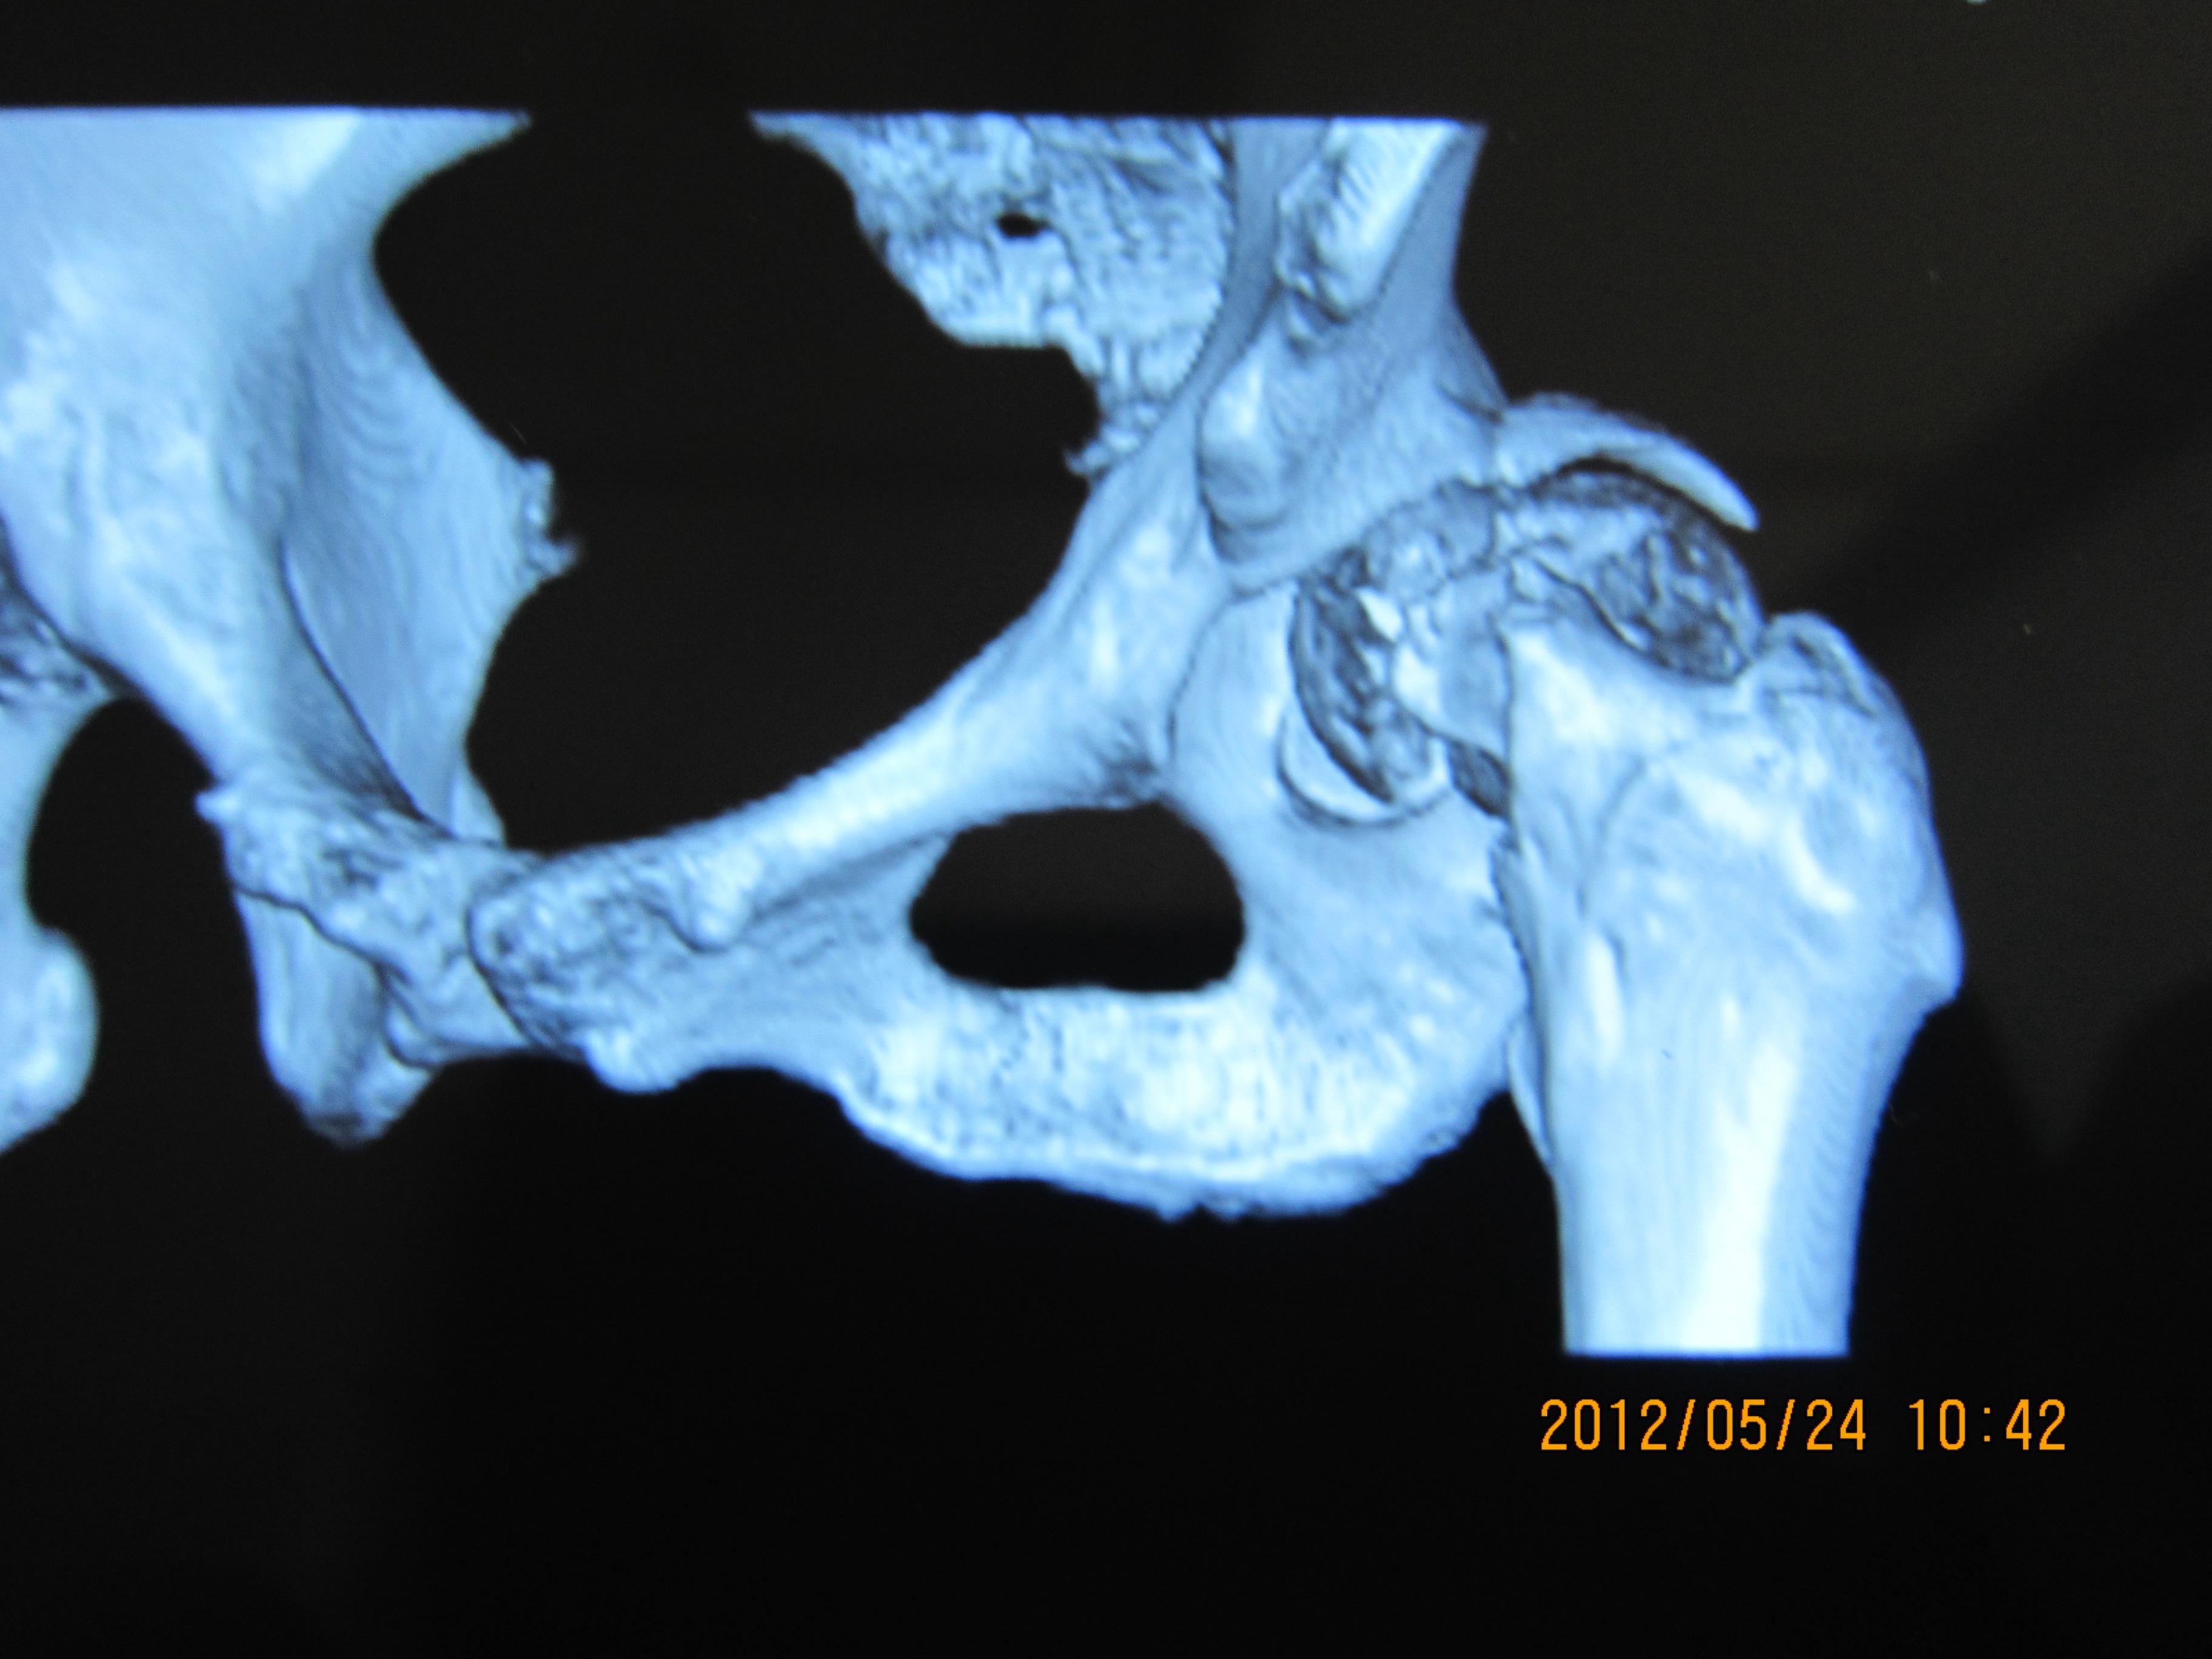 股骨颈骨折一例